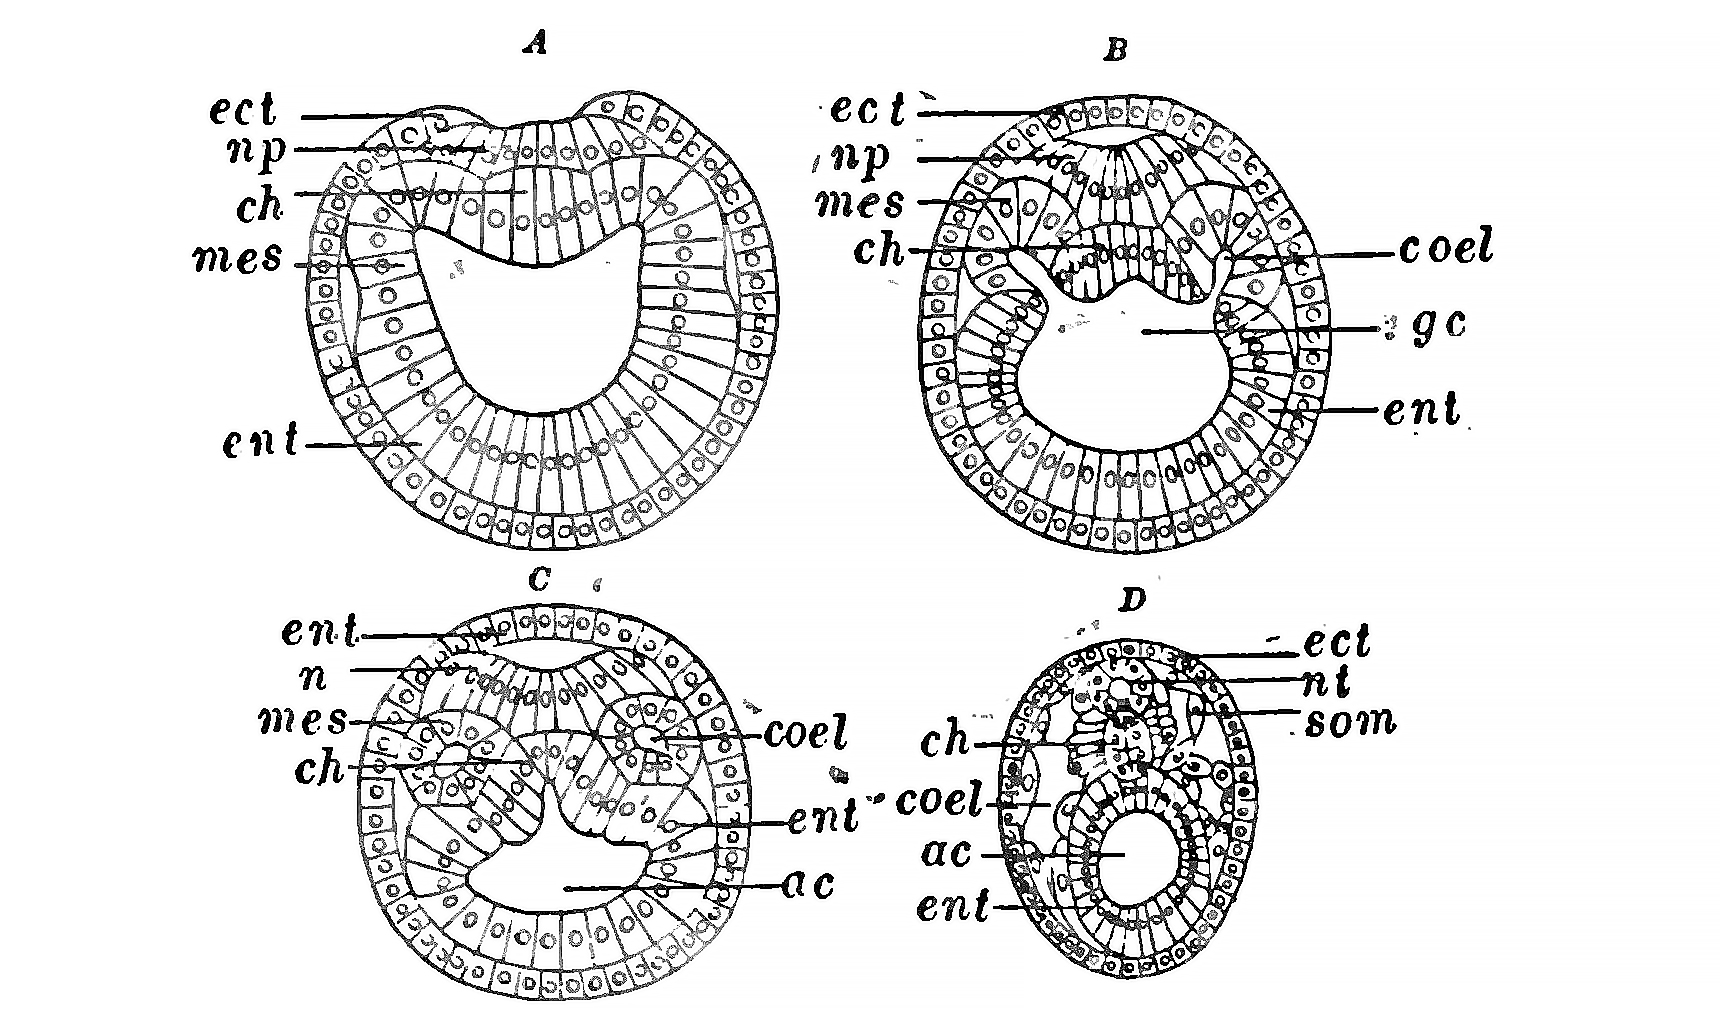 Esquema do corte transversal da larva de anfioxo nos sucesssivos estádios de desenvolvimento.